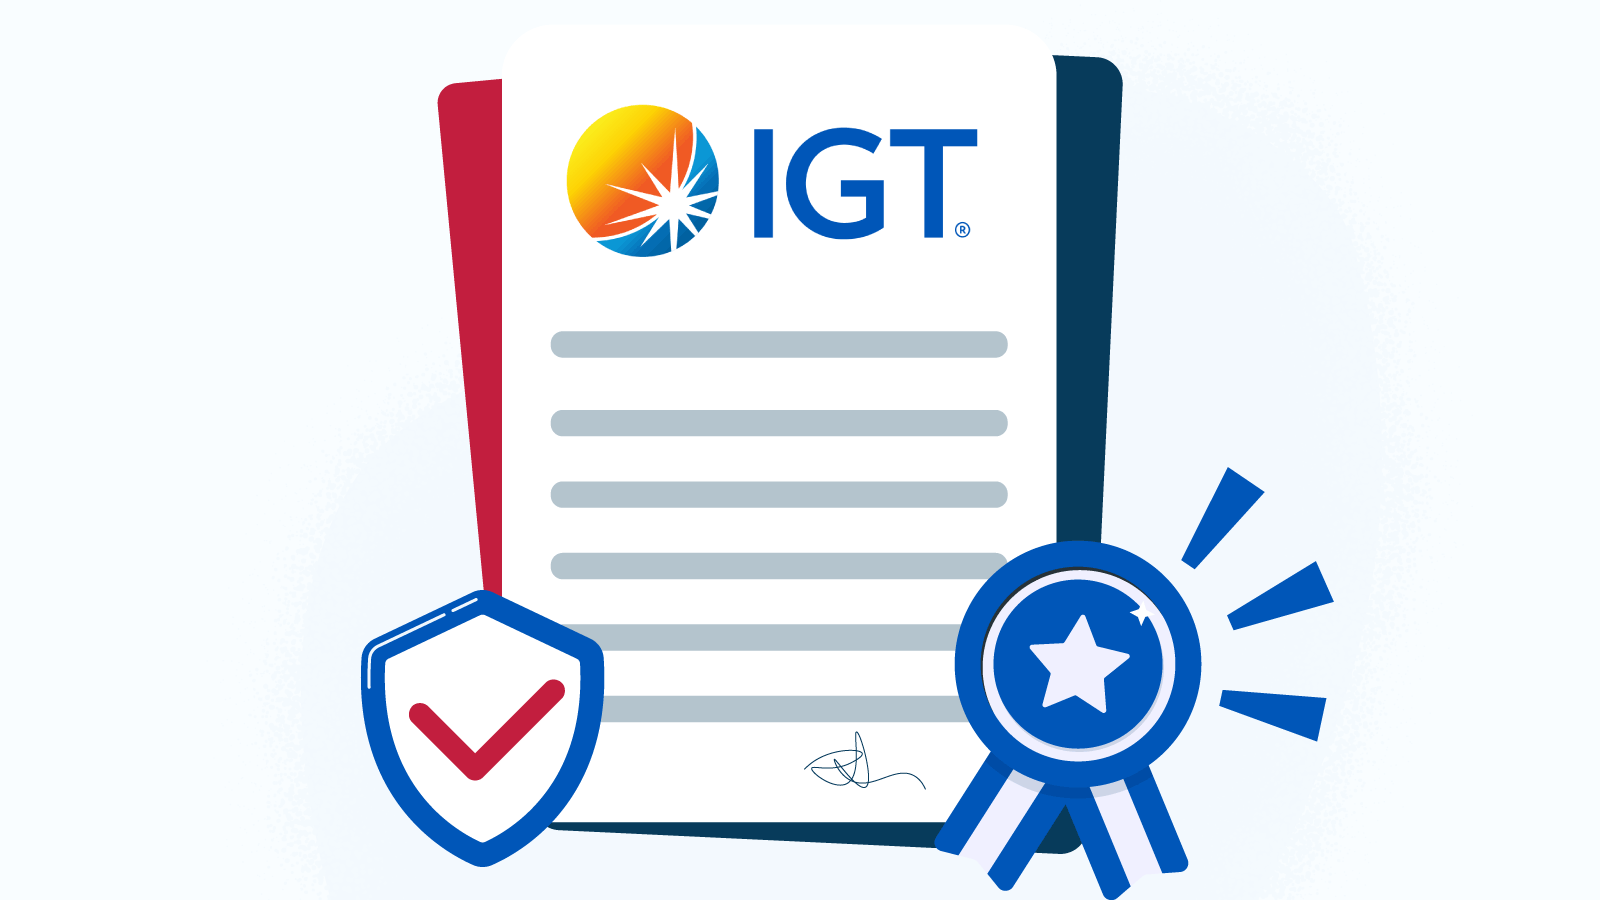 IGT Safety, Licensing, and Regulation